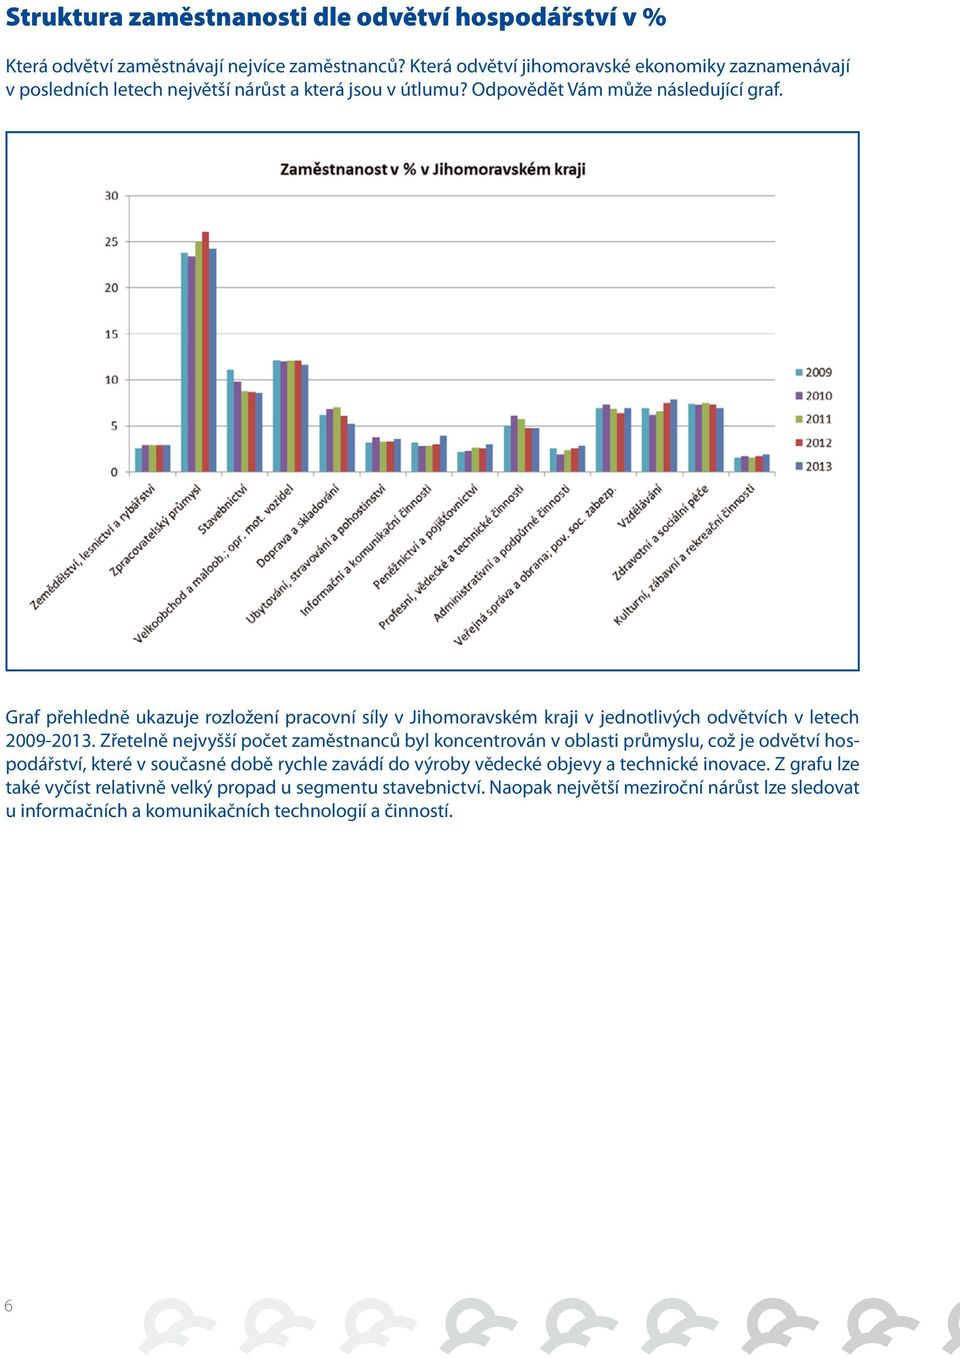 Graf přehledně ukazuje rozložení pracovní síly v Jihomoravském kraji v jednotlivých odvětvích v letech 2009-2013.